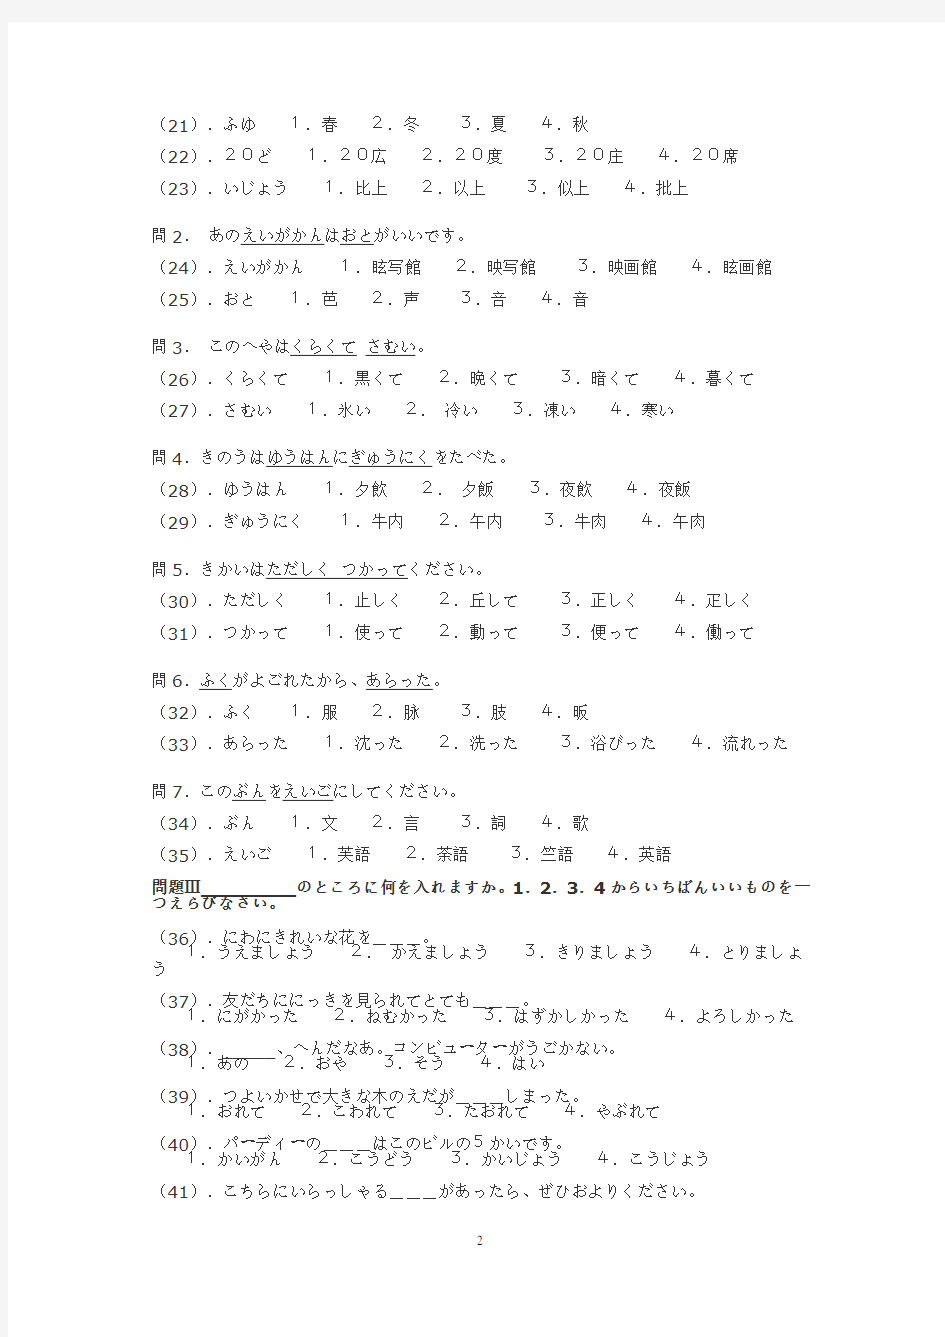 2005年日语能力考试3级真题及答案(全)